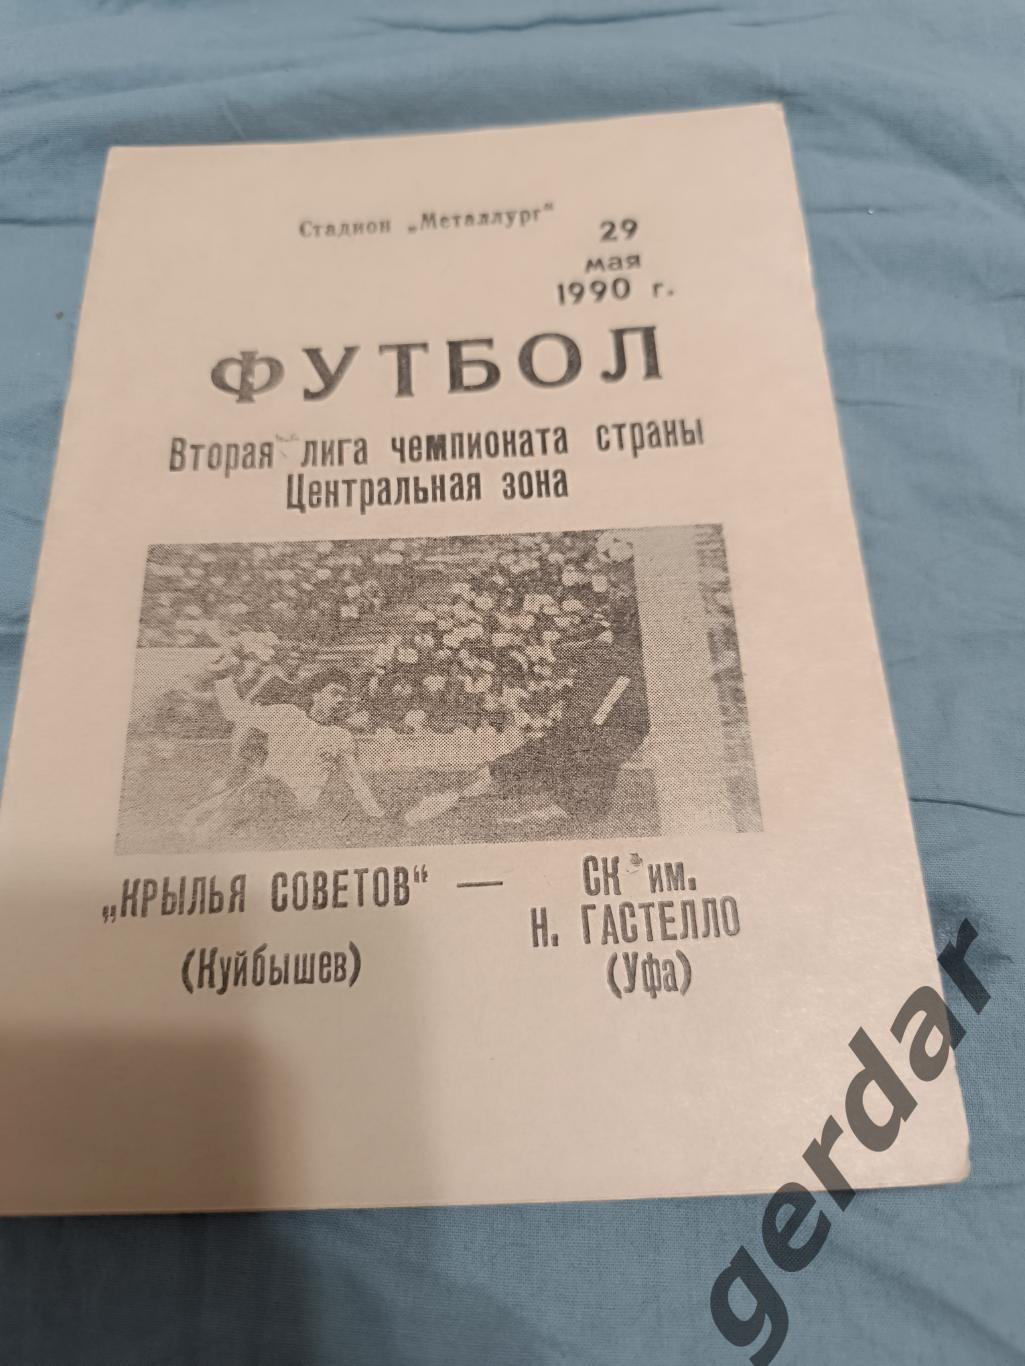 68 крылья советов Куйбышев СК им Гастелло Уфа 1990